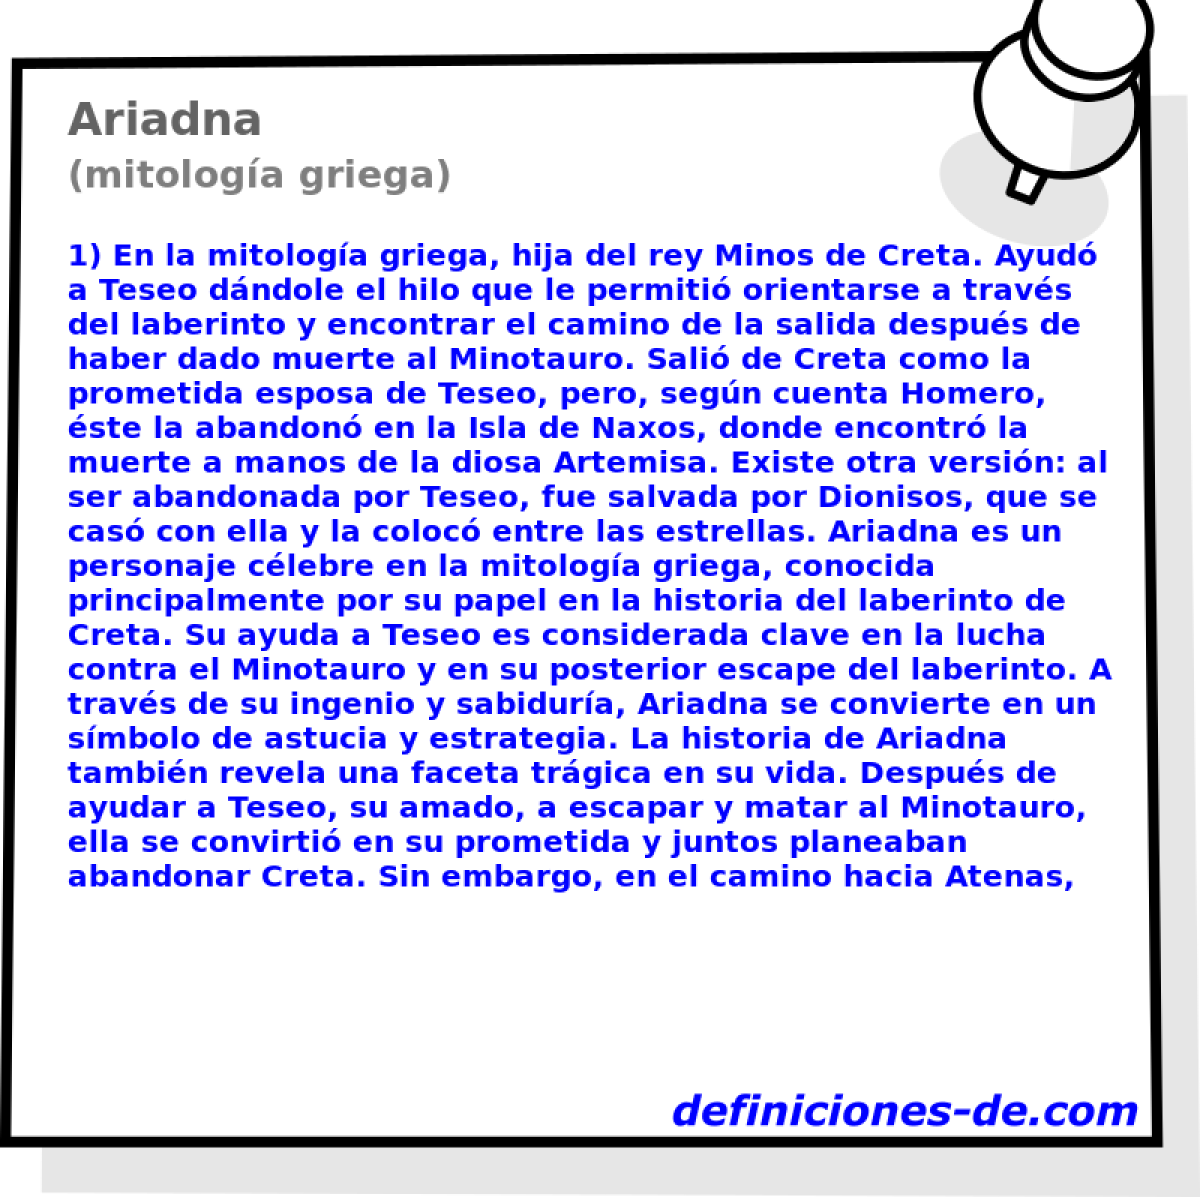 Ariadna (mitologa griega)